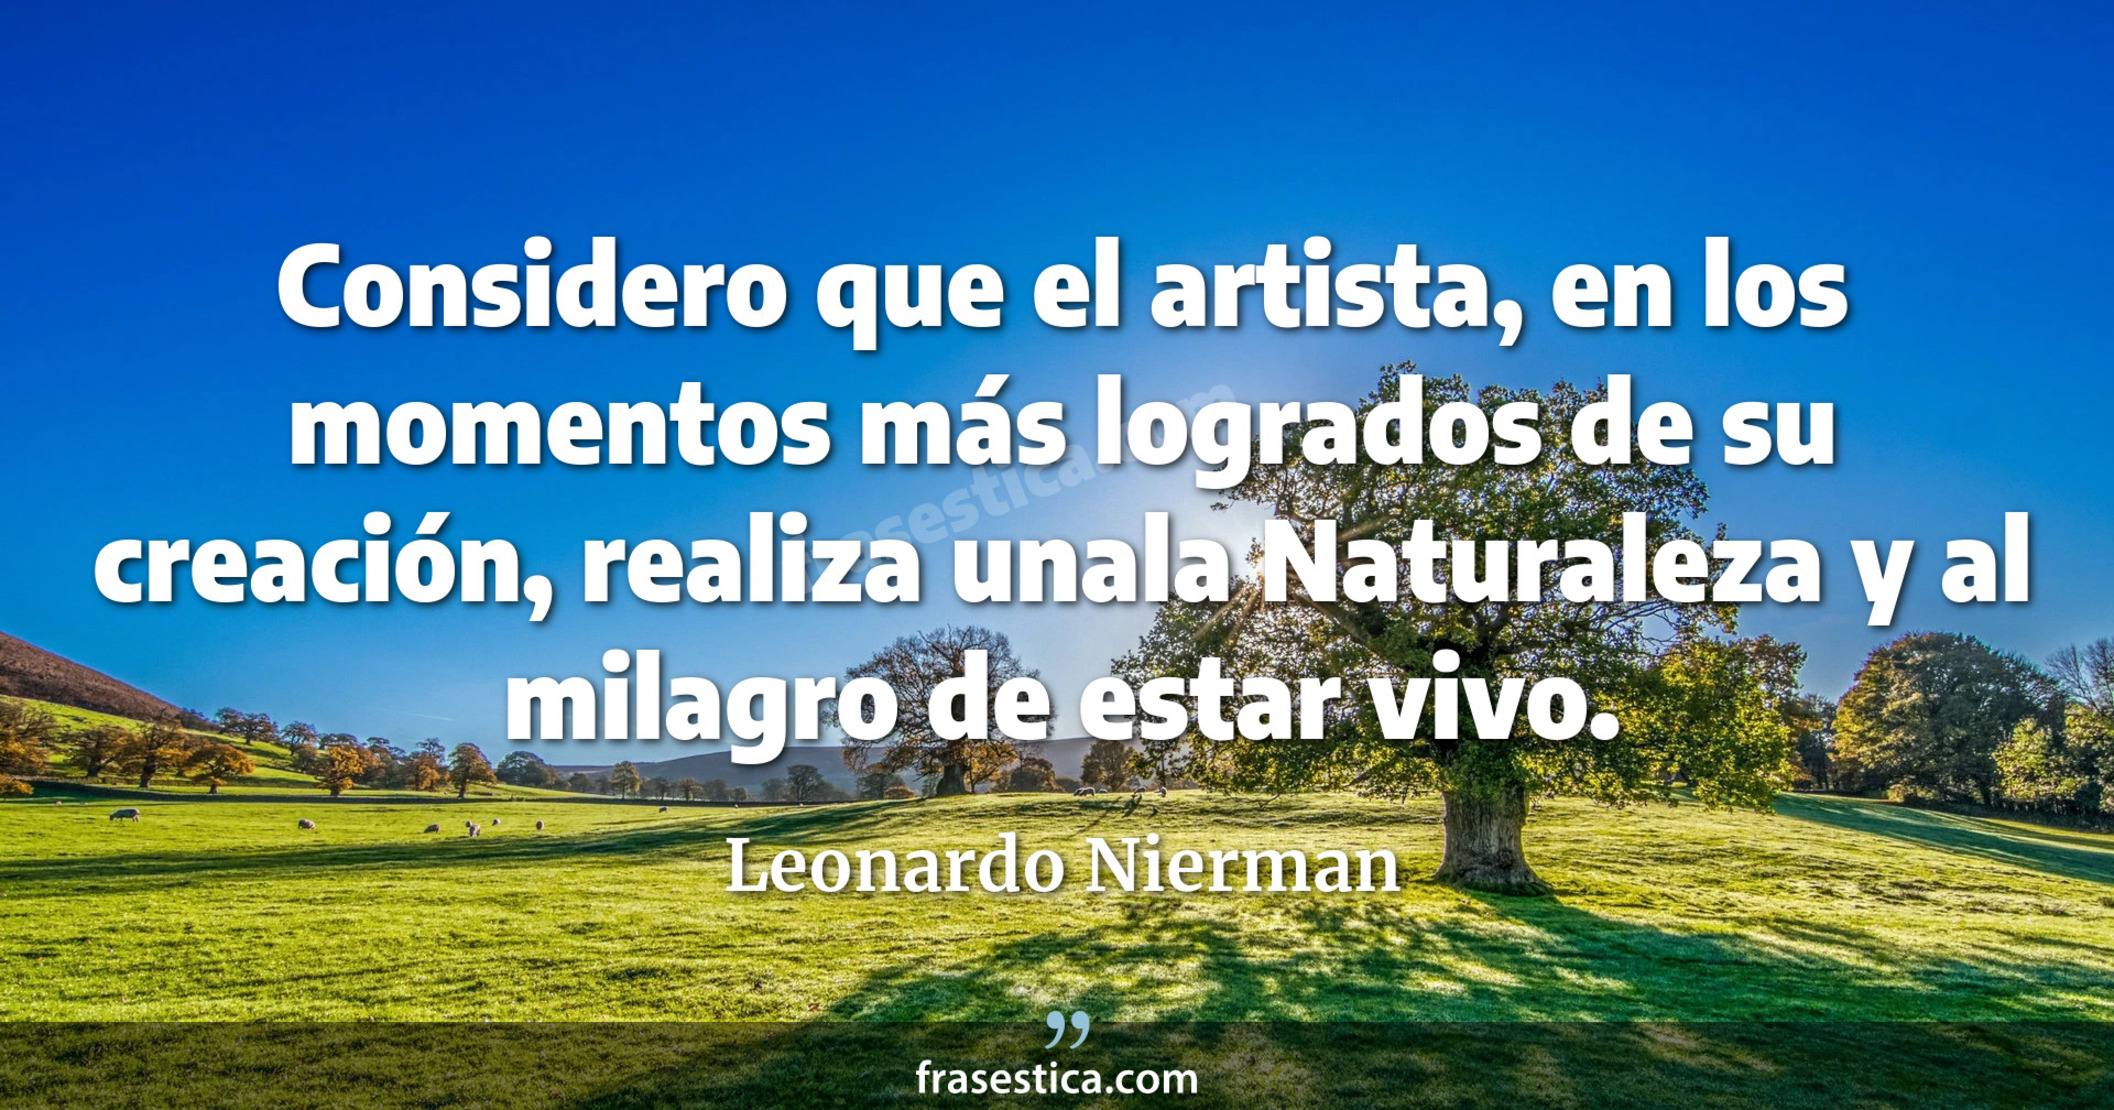 Considero que el artista, en los momentos más logrados de su creación, realiza unala Naturaleza y al milagro de estar vivo. - Leonardo Nierman